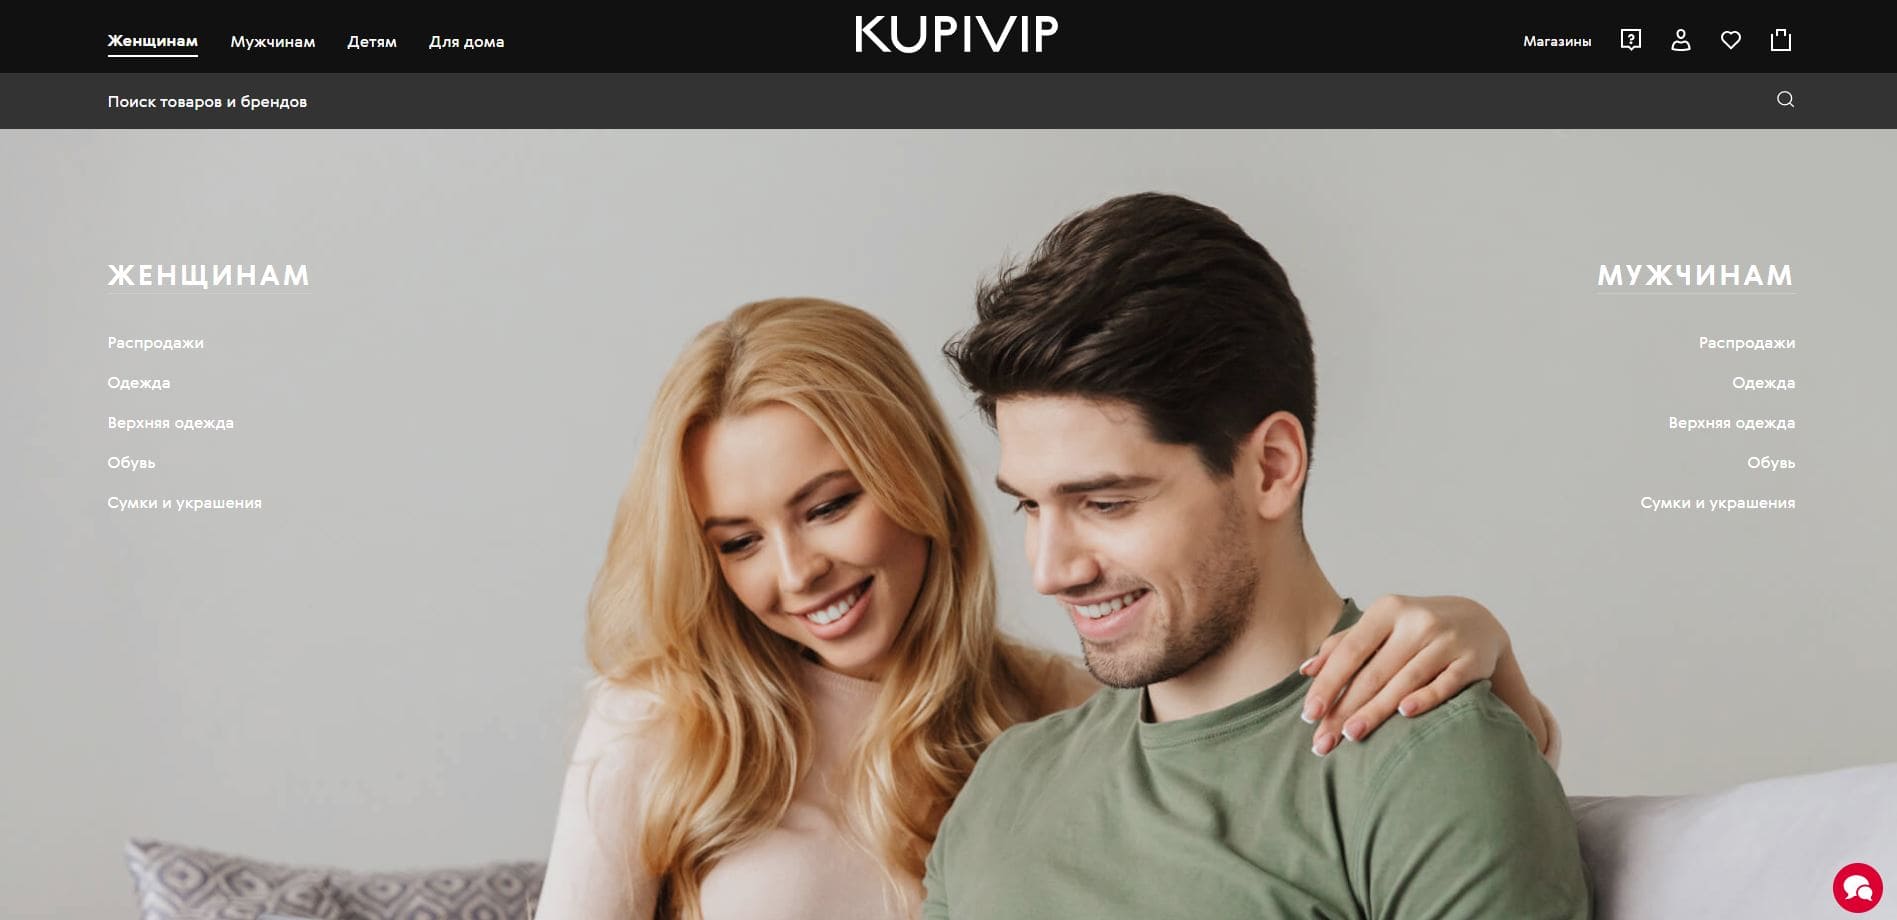 KupiVIP (КупиВип) — главная сайта